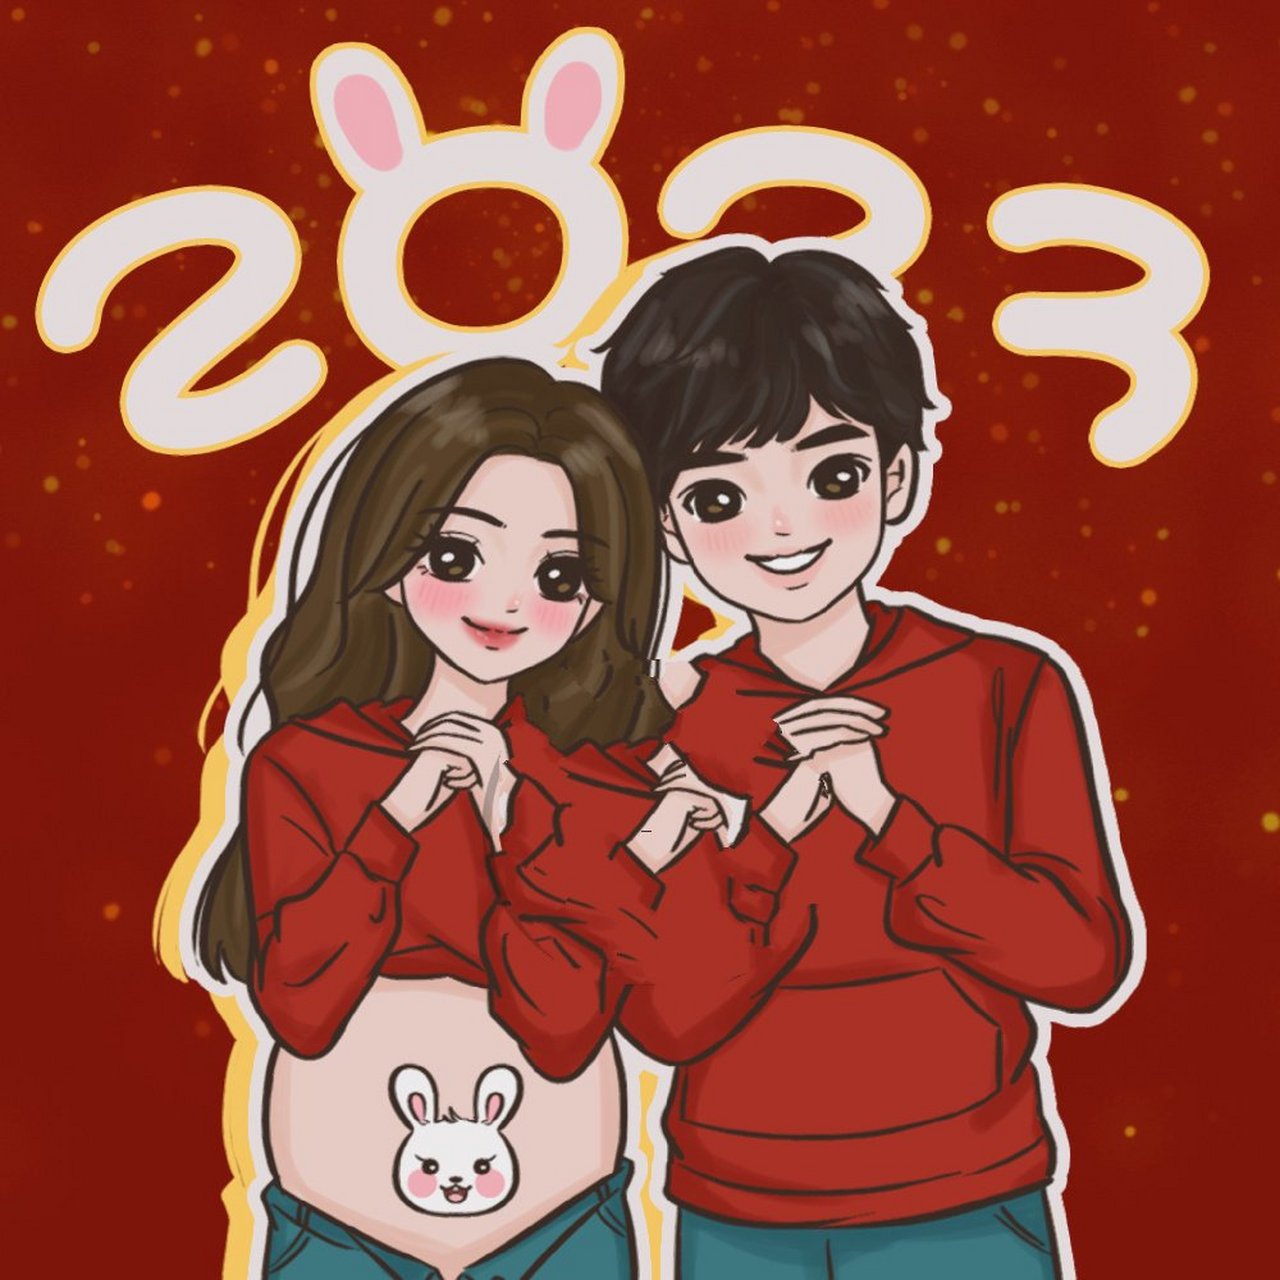 2023新年情侣头像 恭喜发财 兔然暴富 新年情侣拜年头像来啦,红红火火